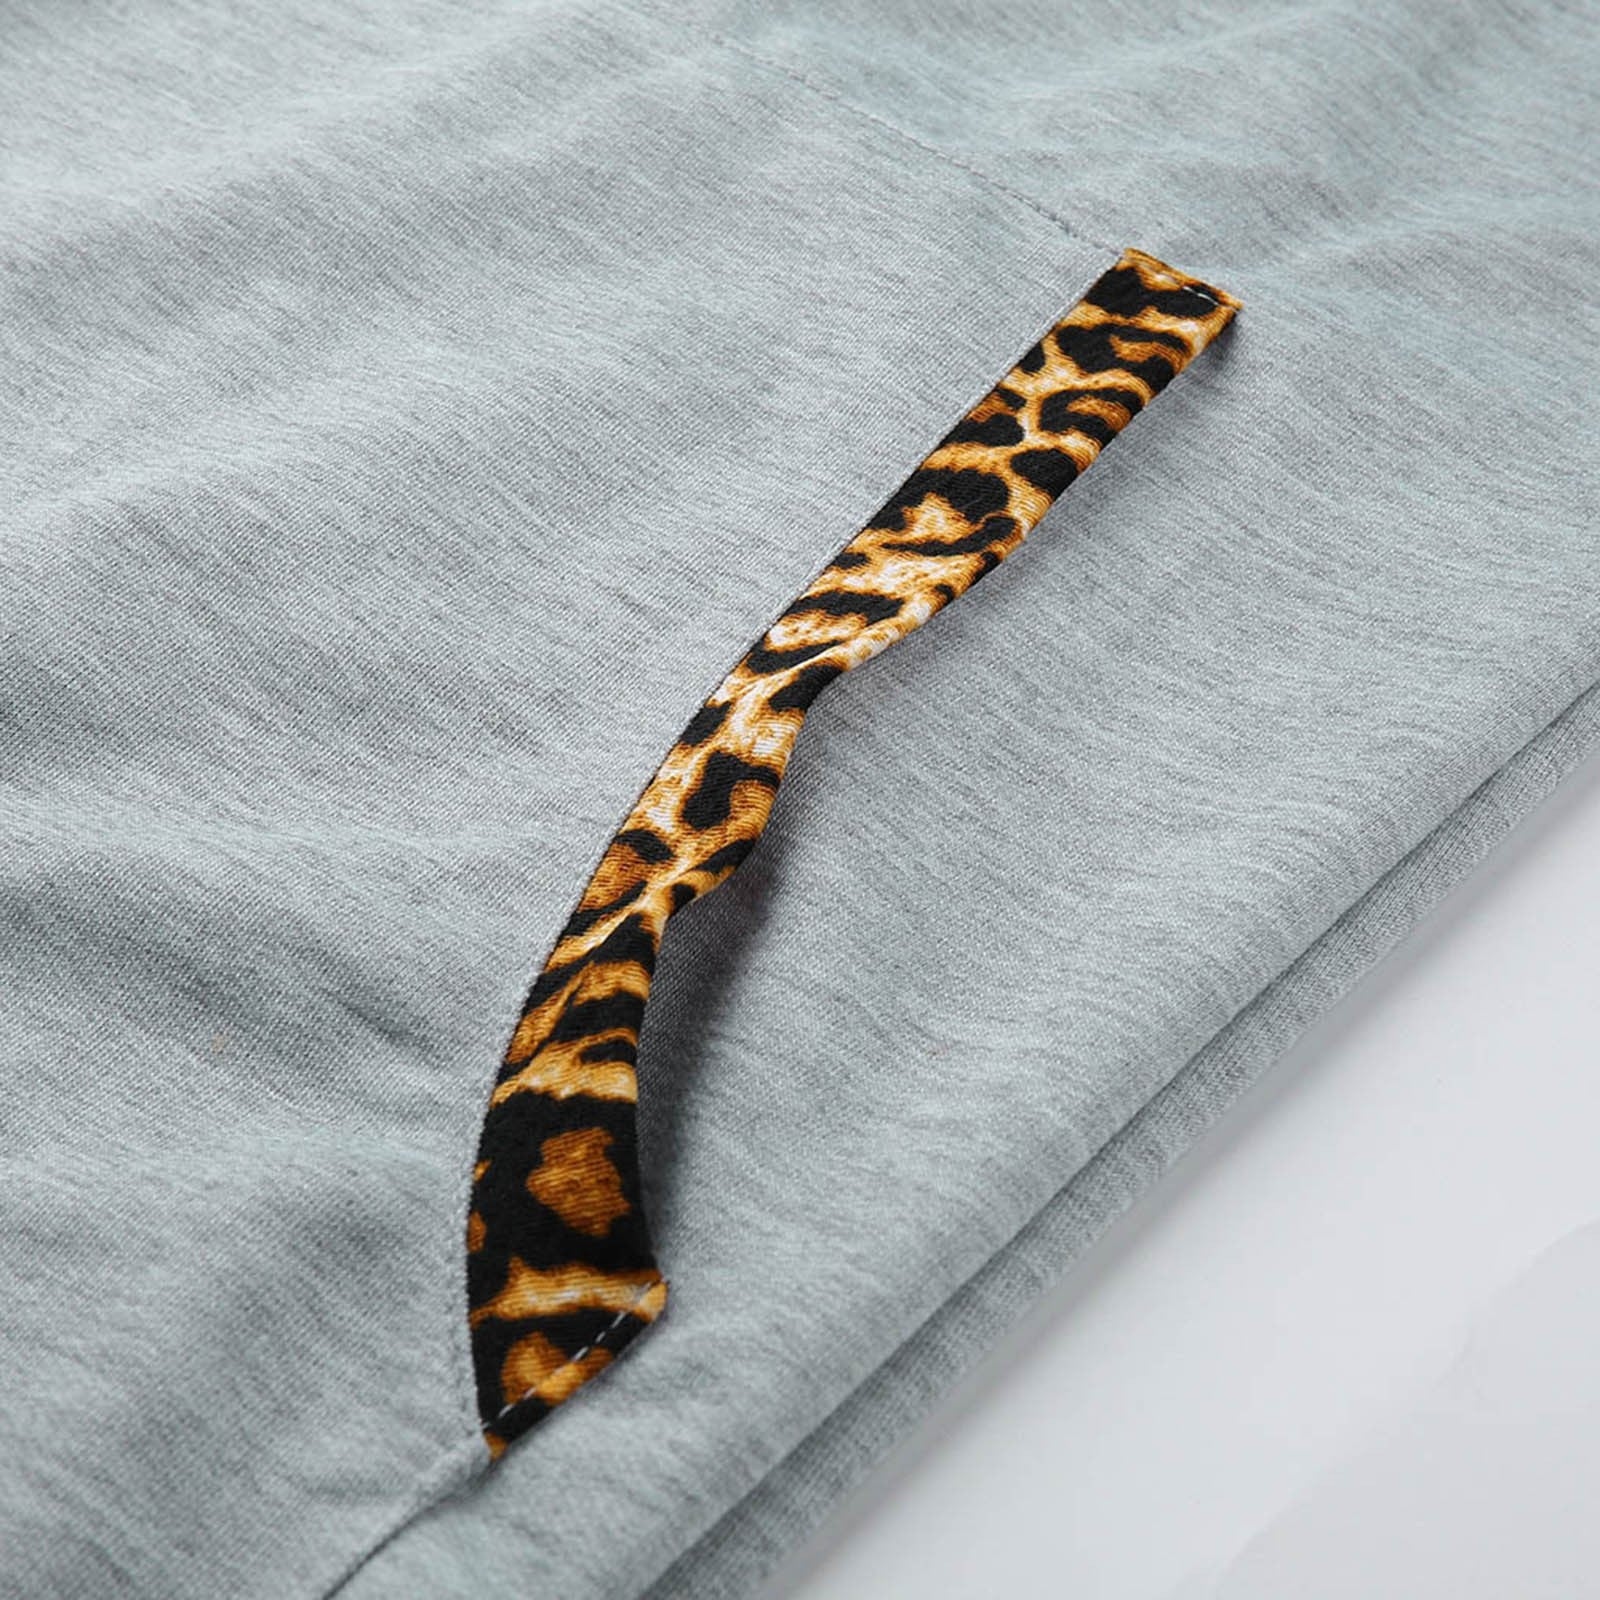 Hooded Leopard Dress - Fashion Damsel